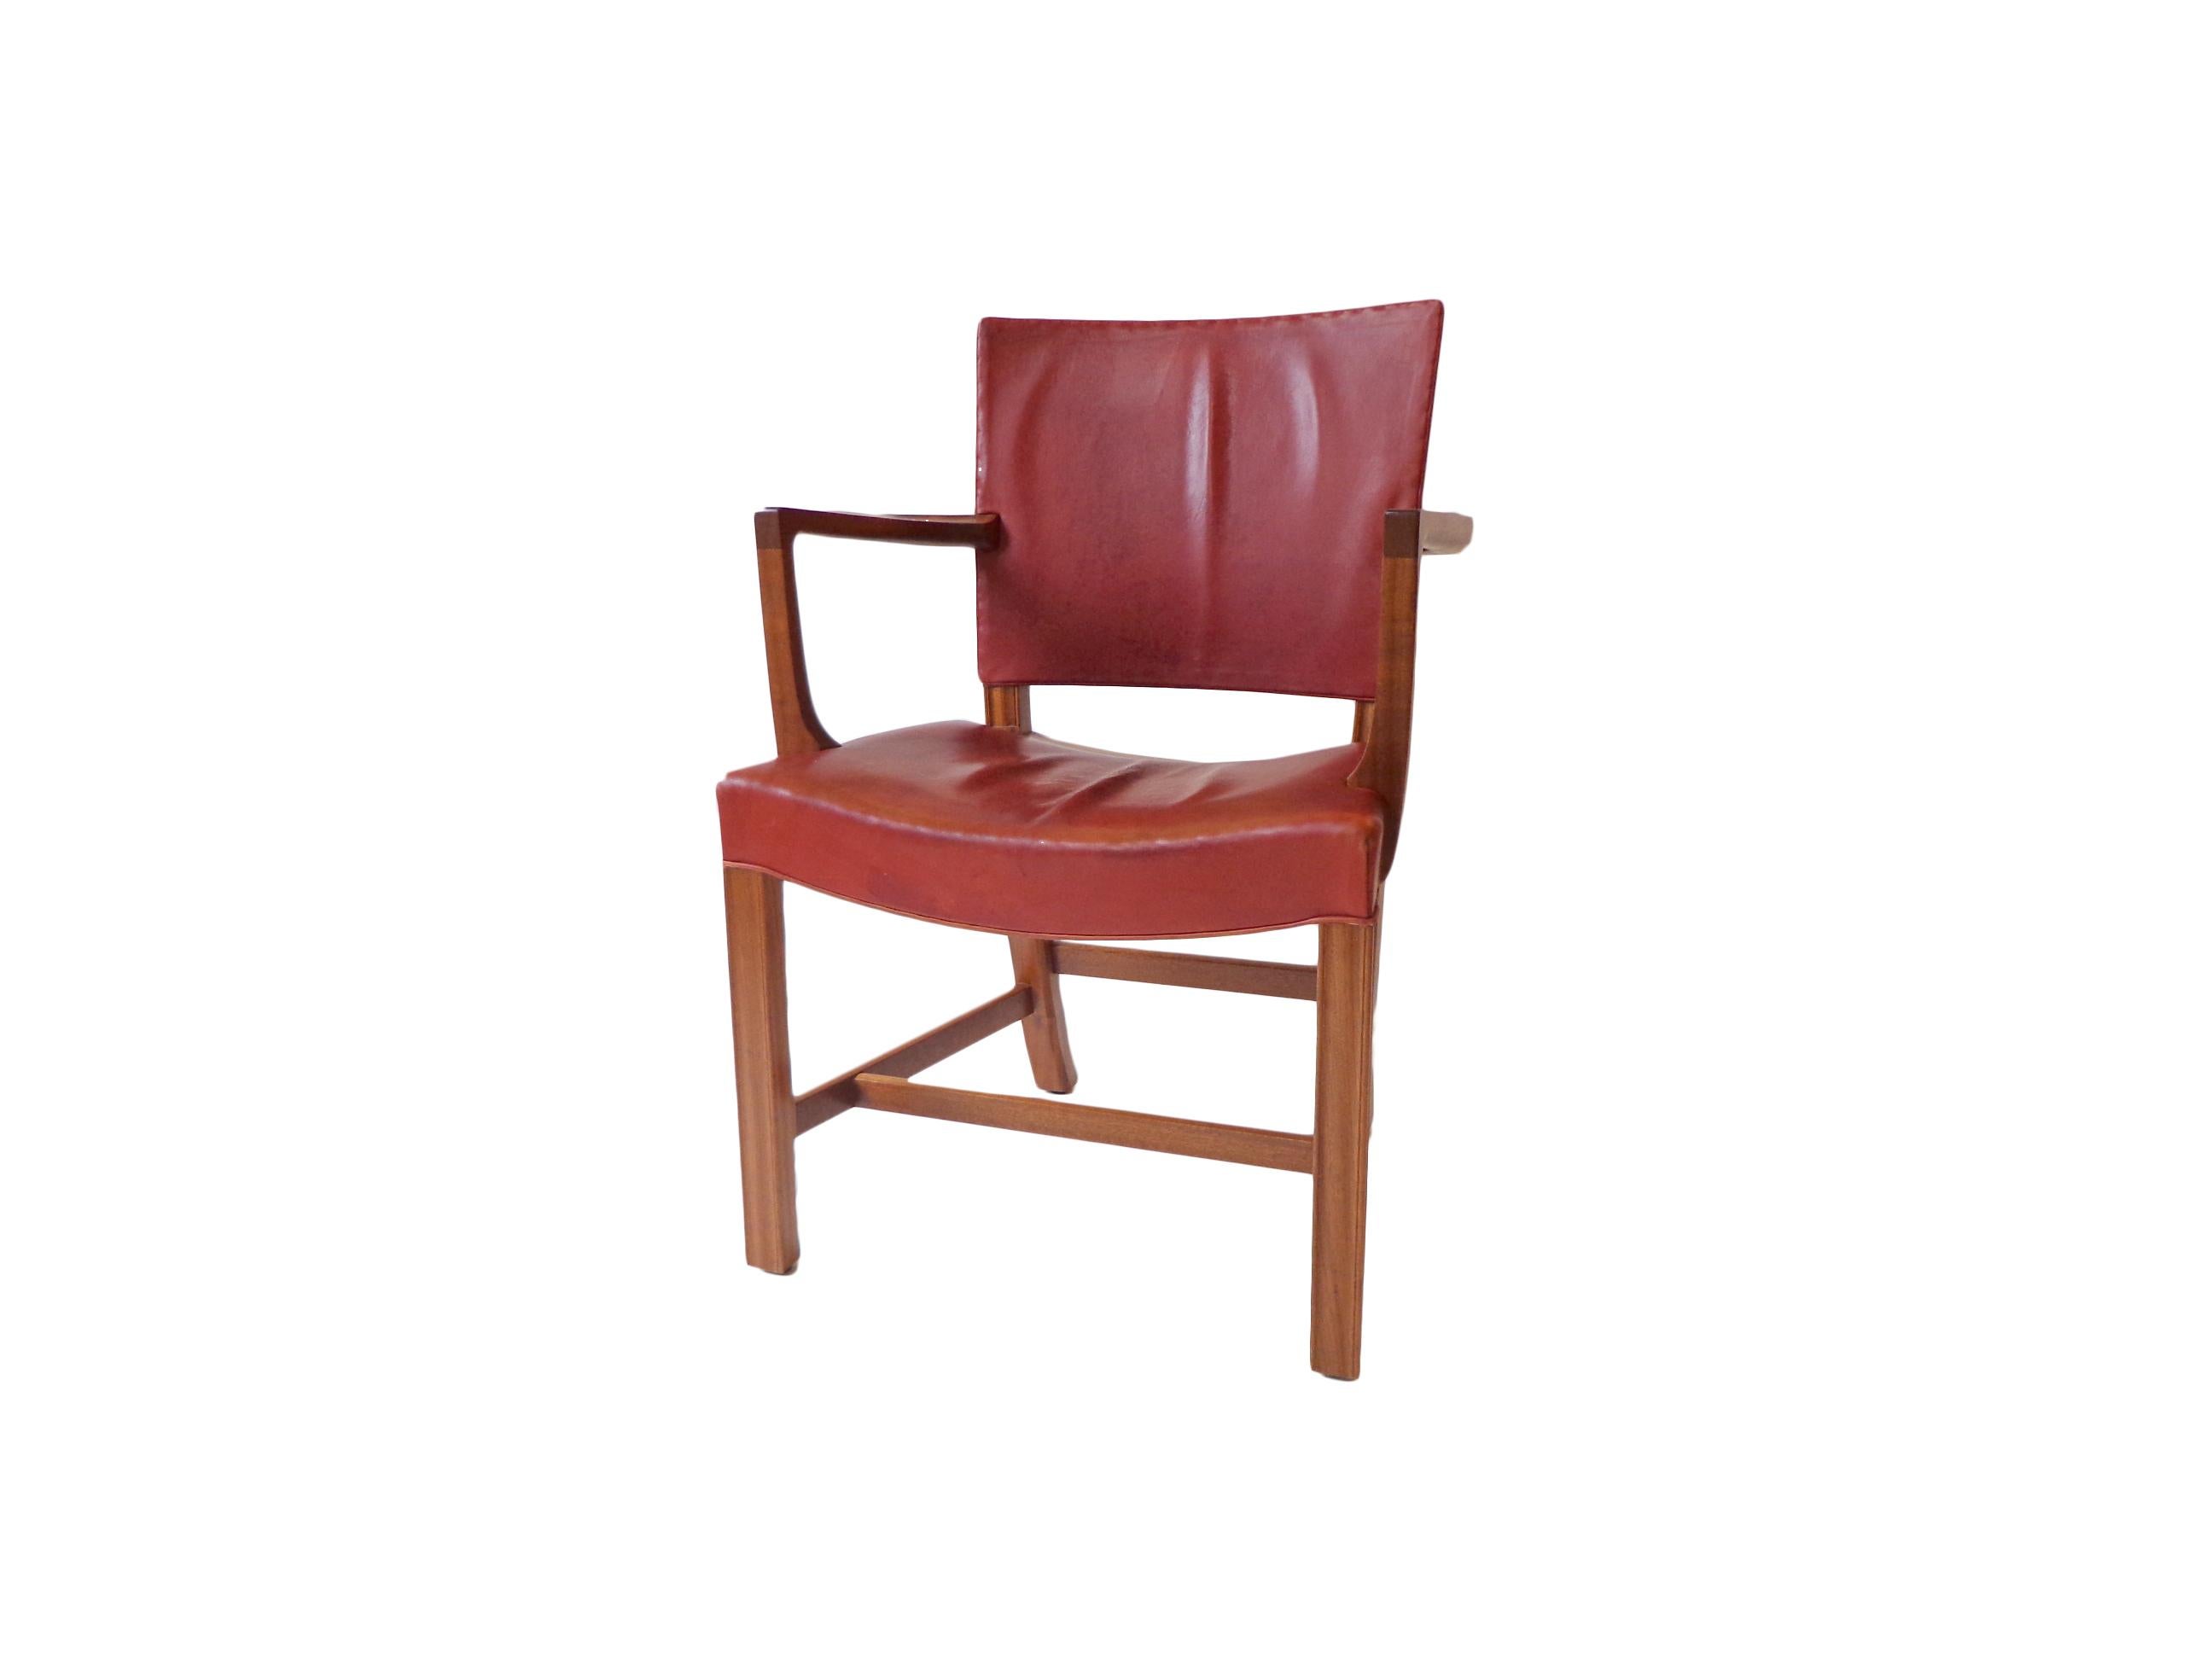 Sessel Modell 3758 A in original rotem indischem Leder und Mahagonifuß. Das Modell wurde 1927 für das dänische Kunstgewerbemuseum entworfen und in den 1940er Jahren von Rud Rasmussen hergestellt. Signiert mit dem Label des Herstellers auf der